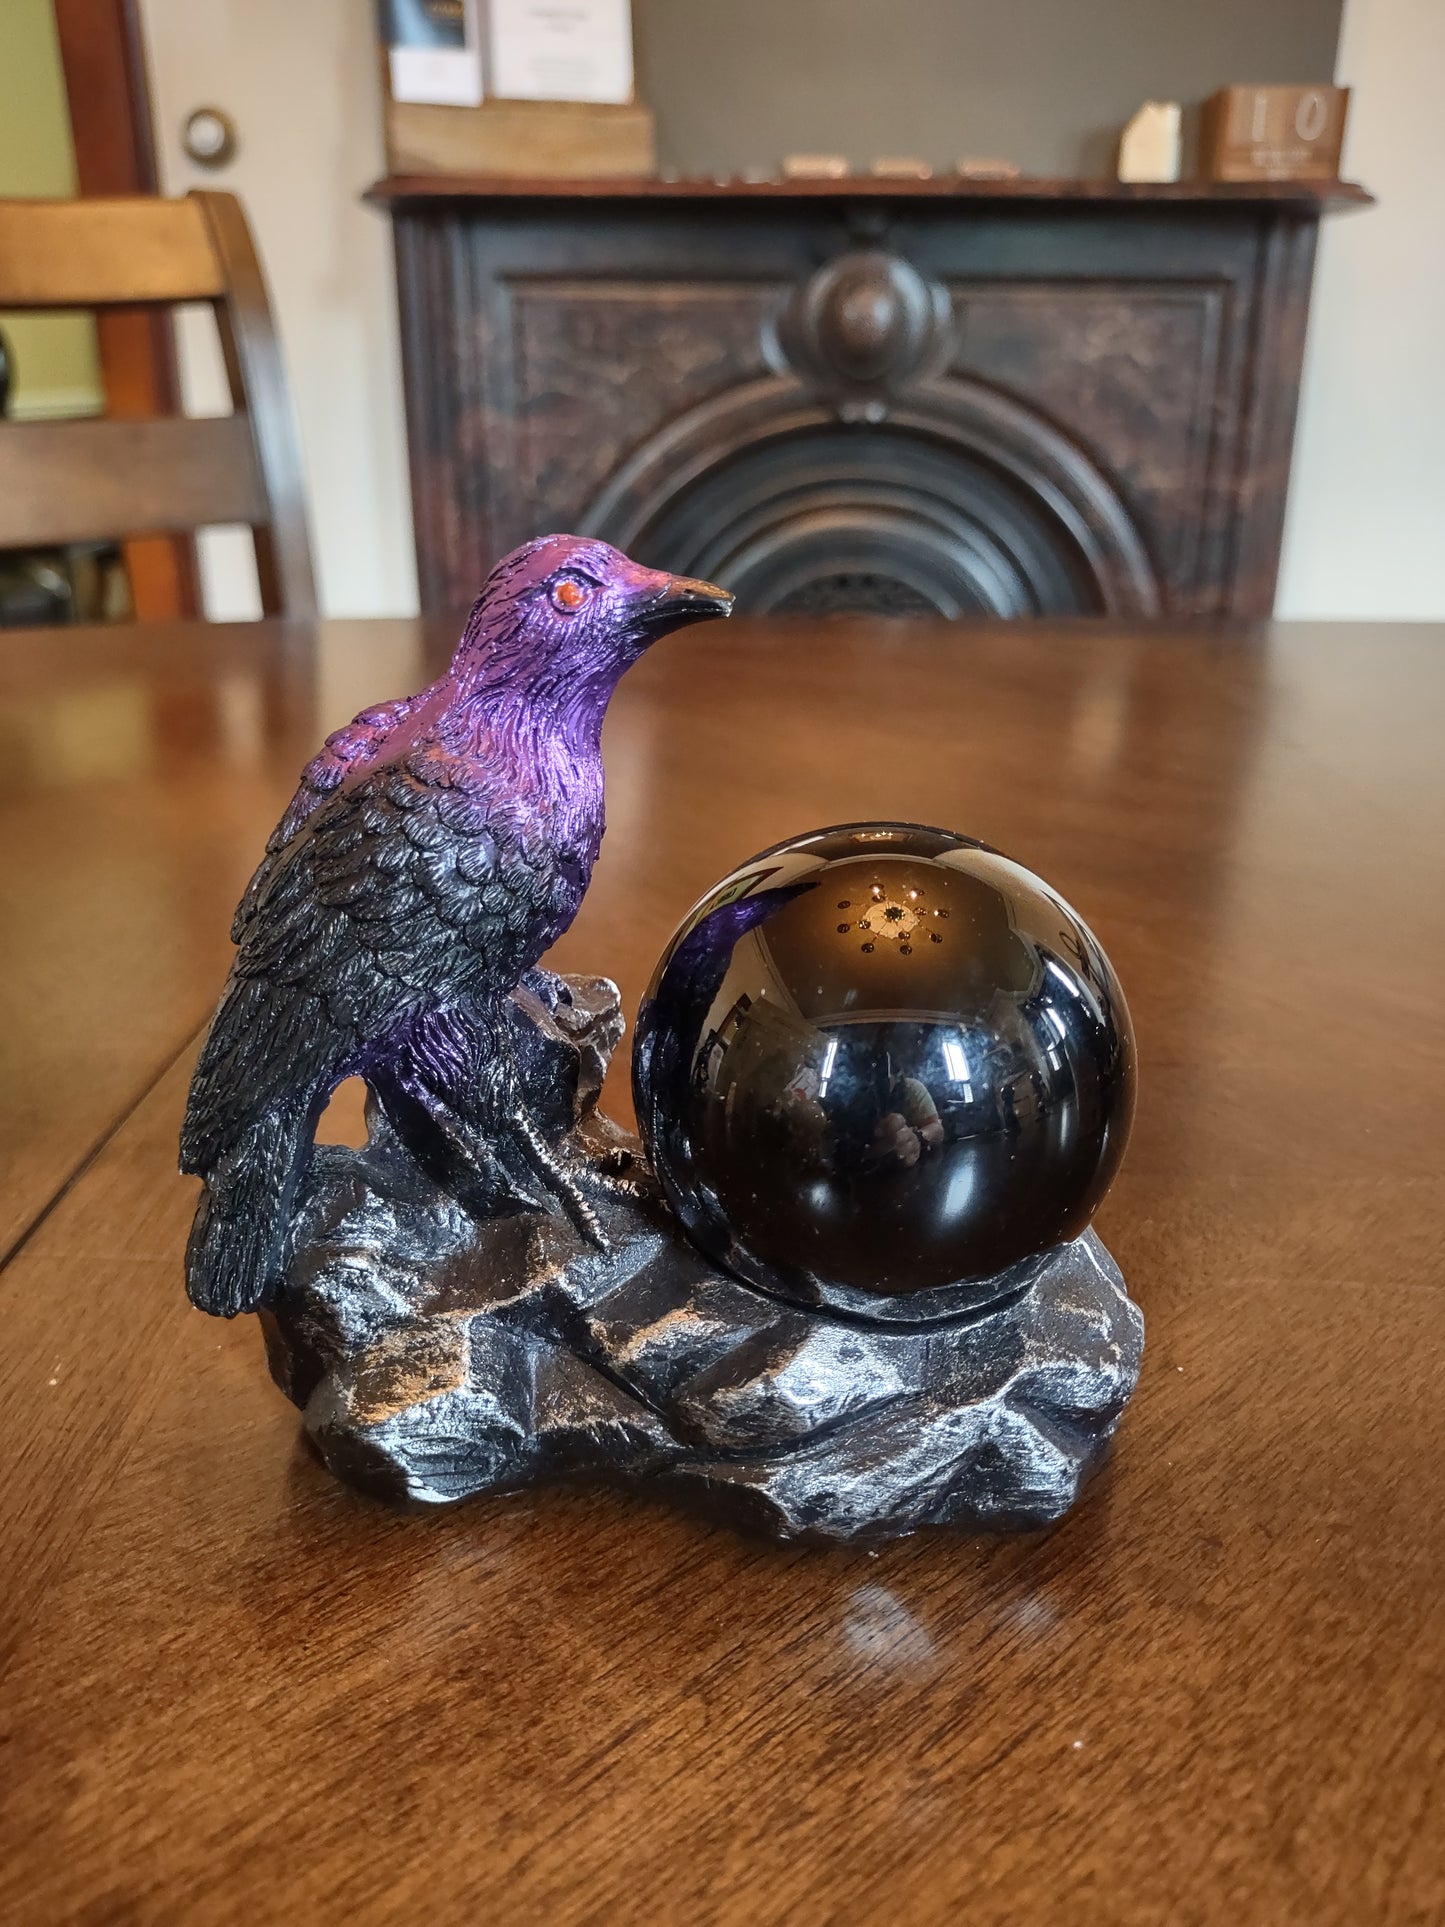 Raven sphere holder with black obsidian sphere